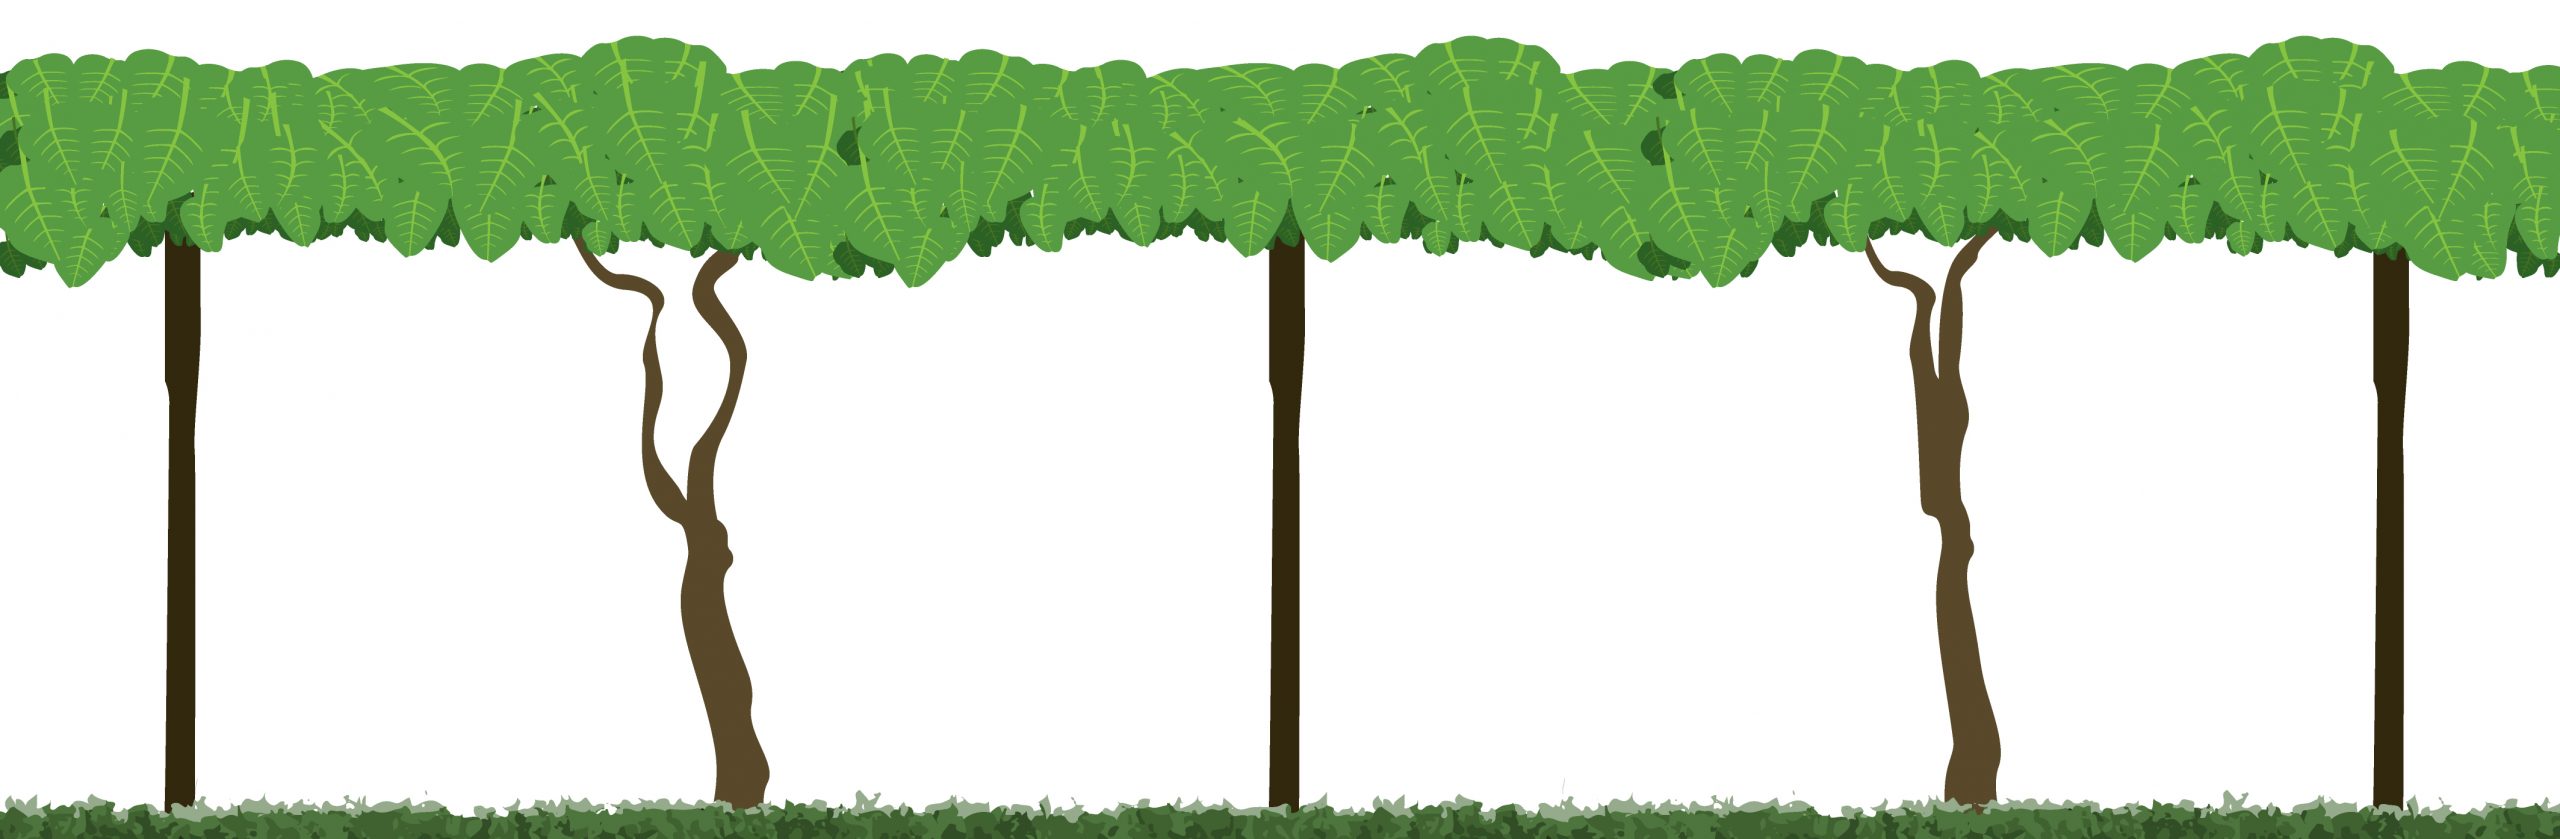 Kiwifruit canopy graphic